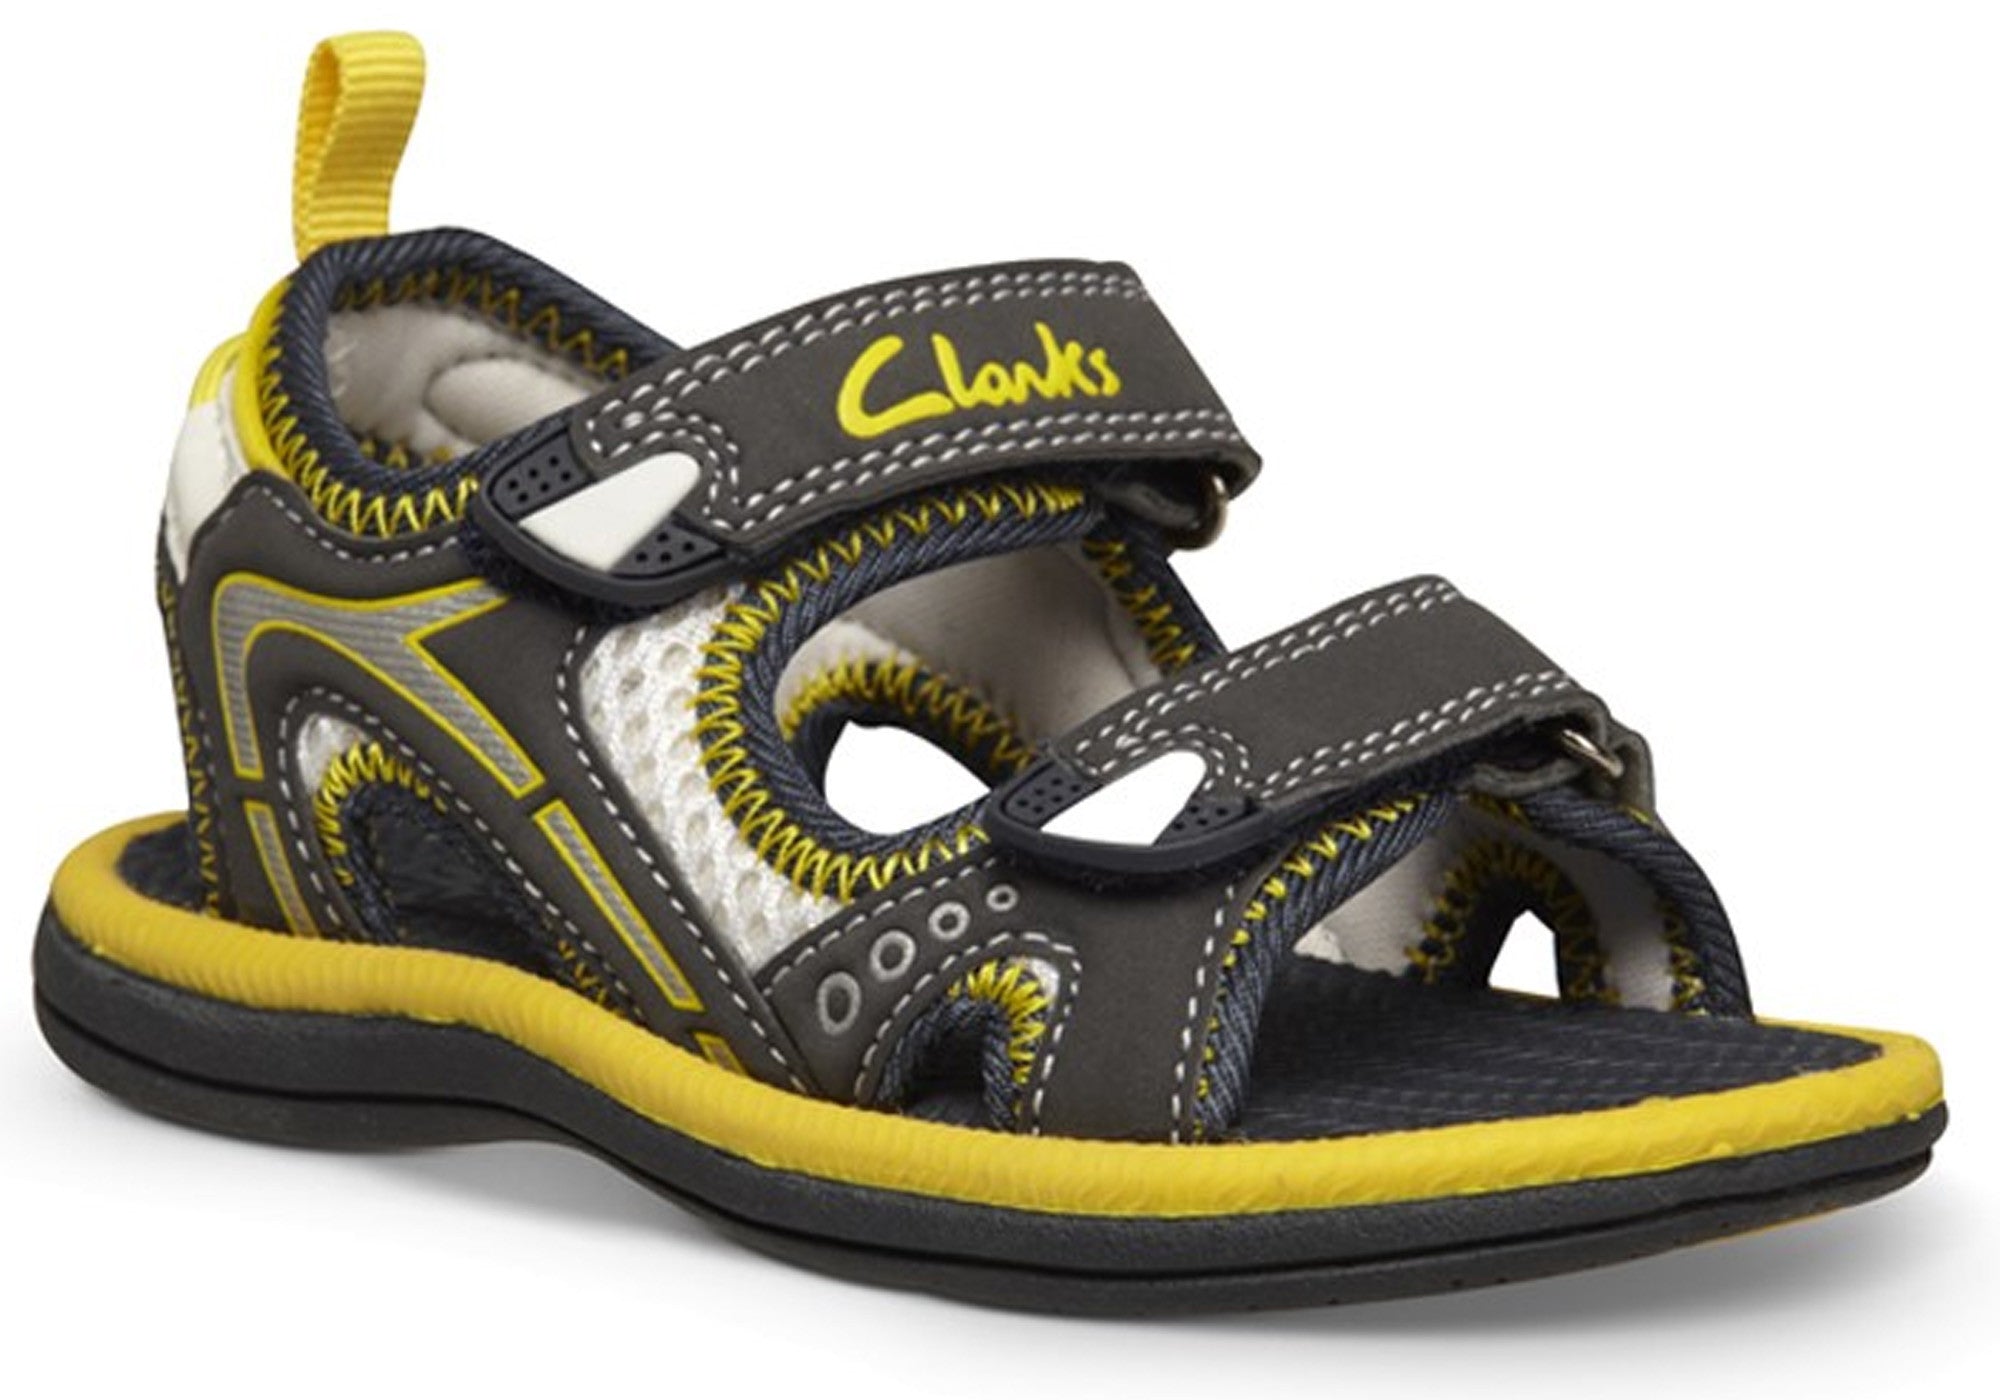 clarks infant slippers